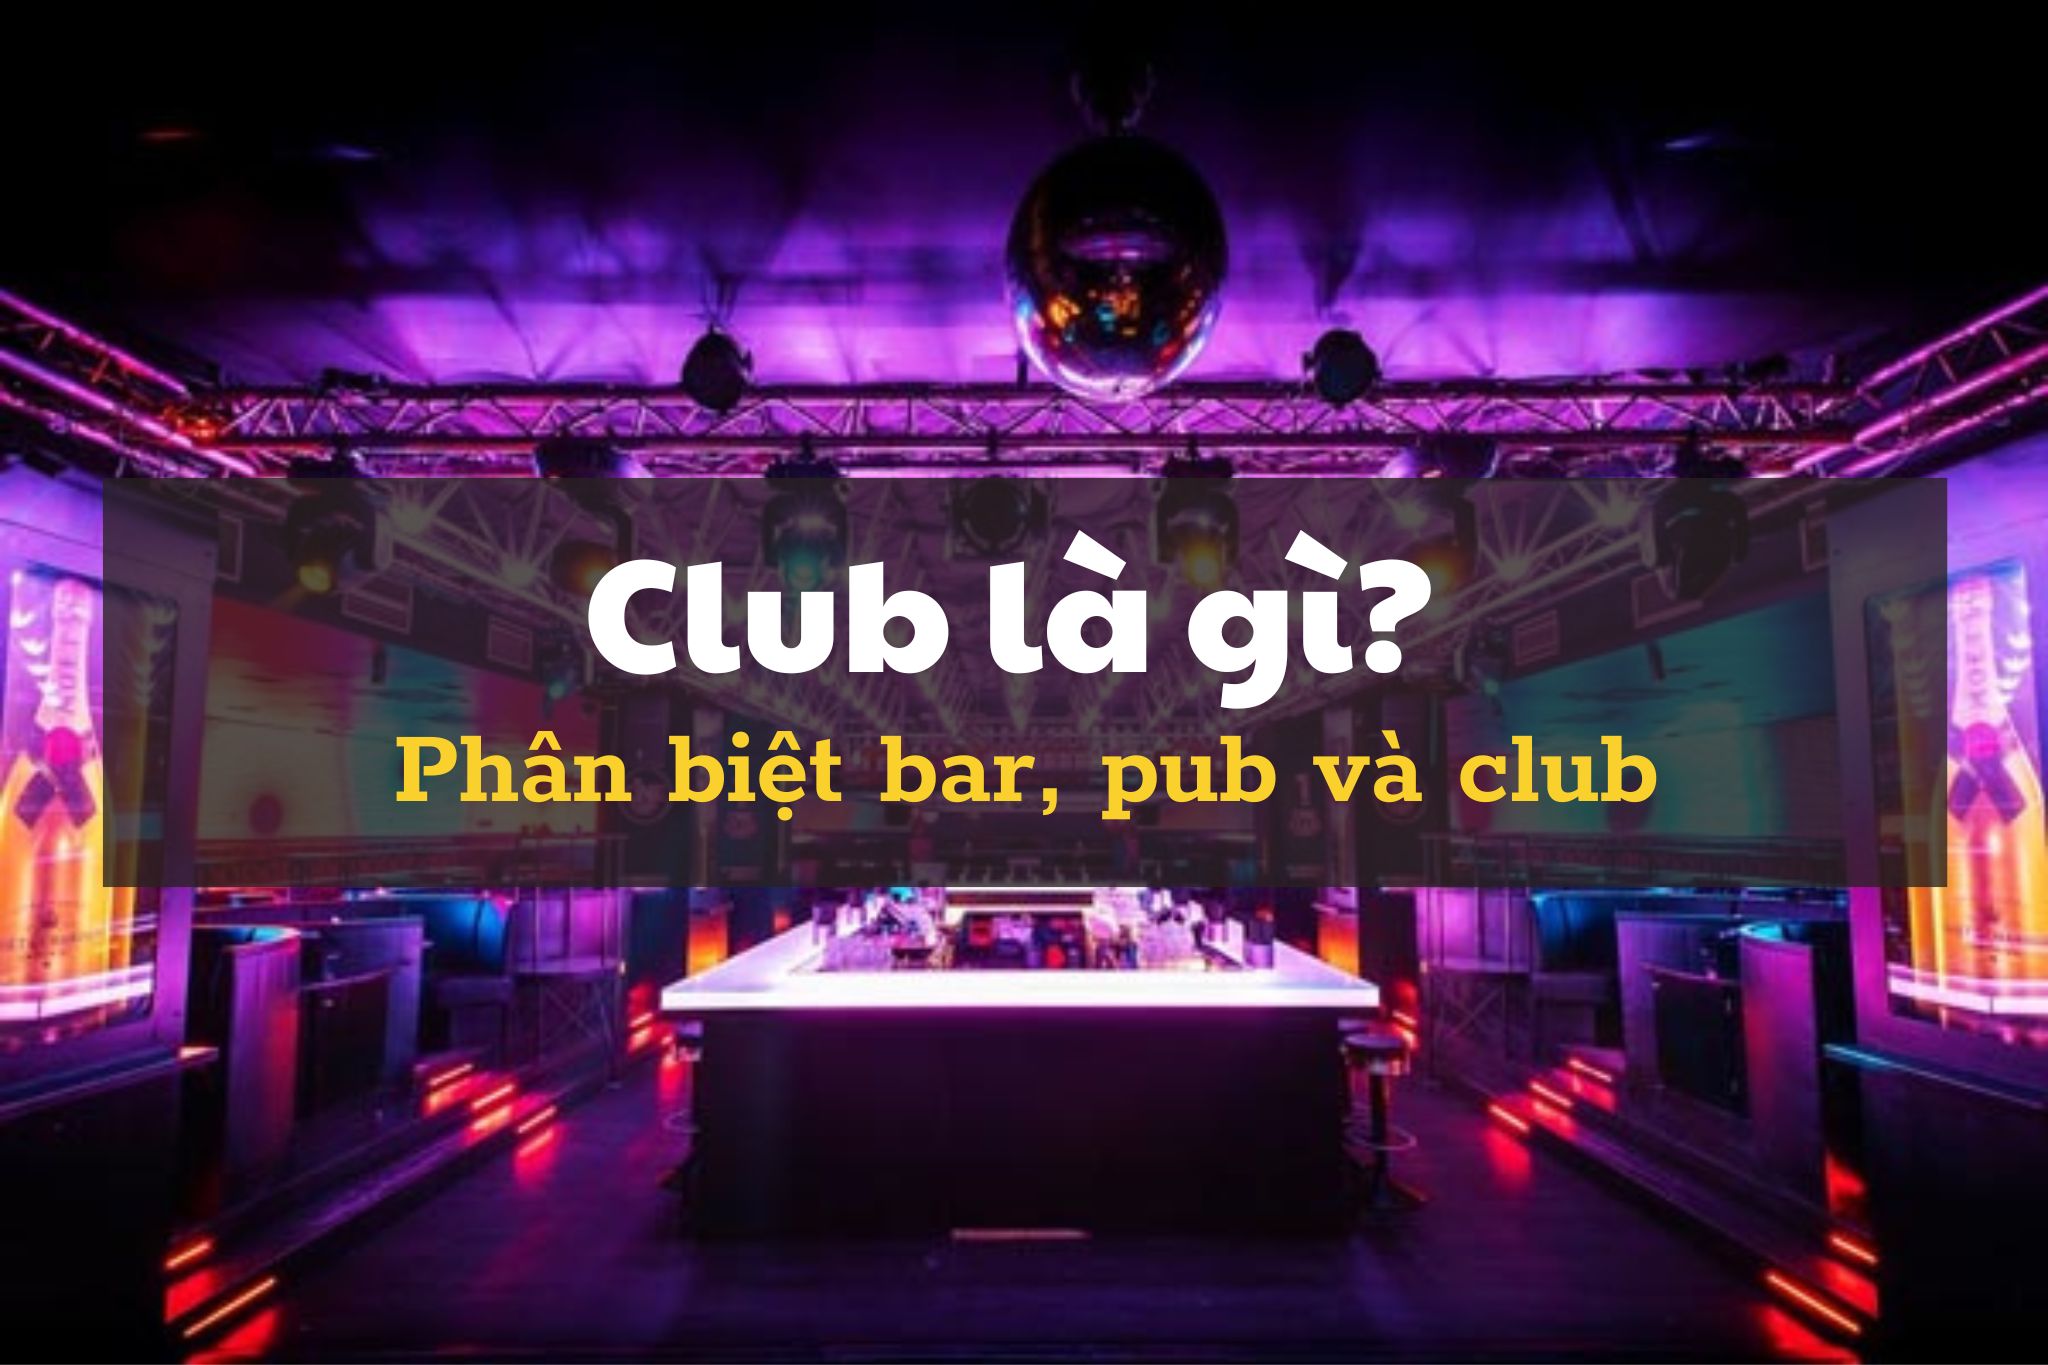 Club là gì? Tìm hiểu sự khác biệt giữa bar, pub và club | Kendesign